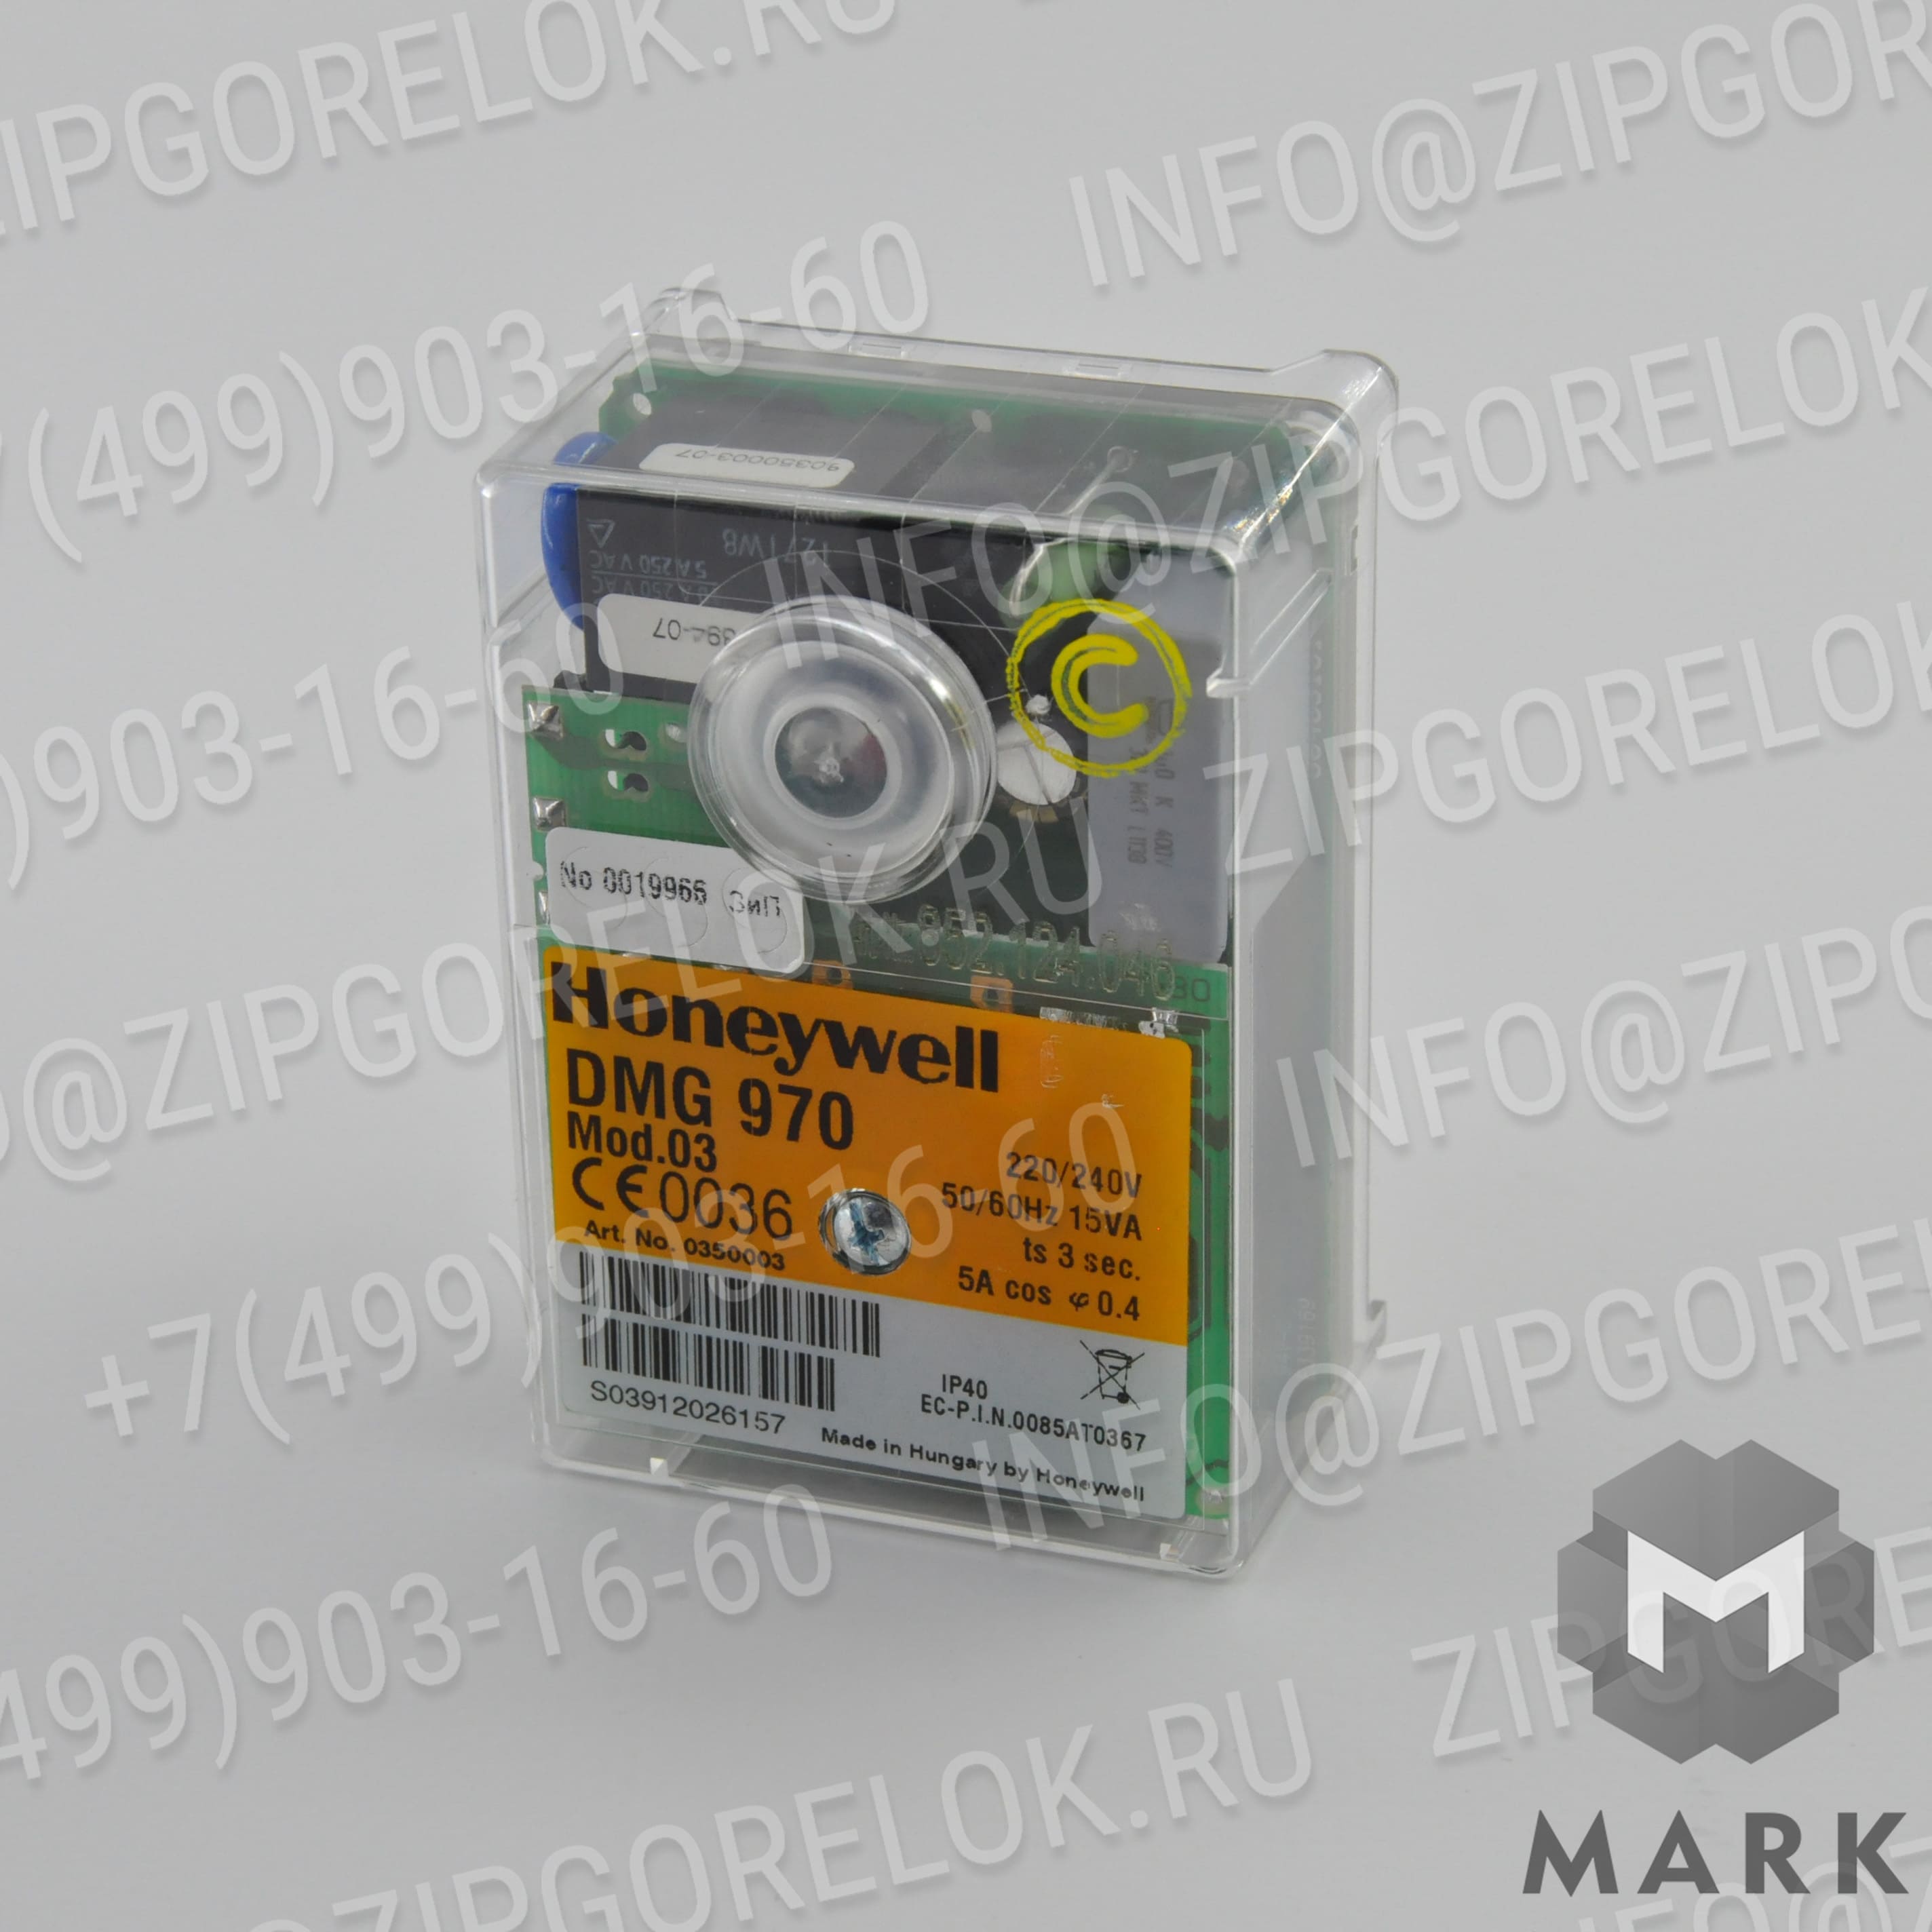 852.124.046 Купить блок управления горением Honeywell DMG970 mod.03 | zipgorelok.ru